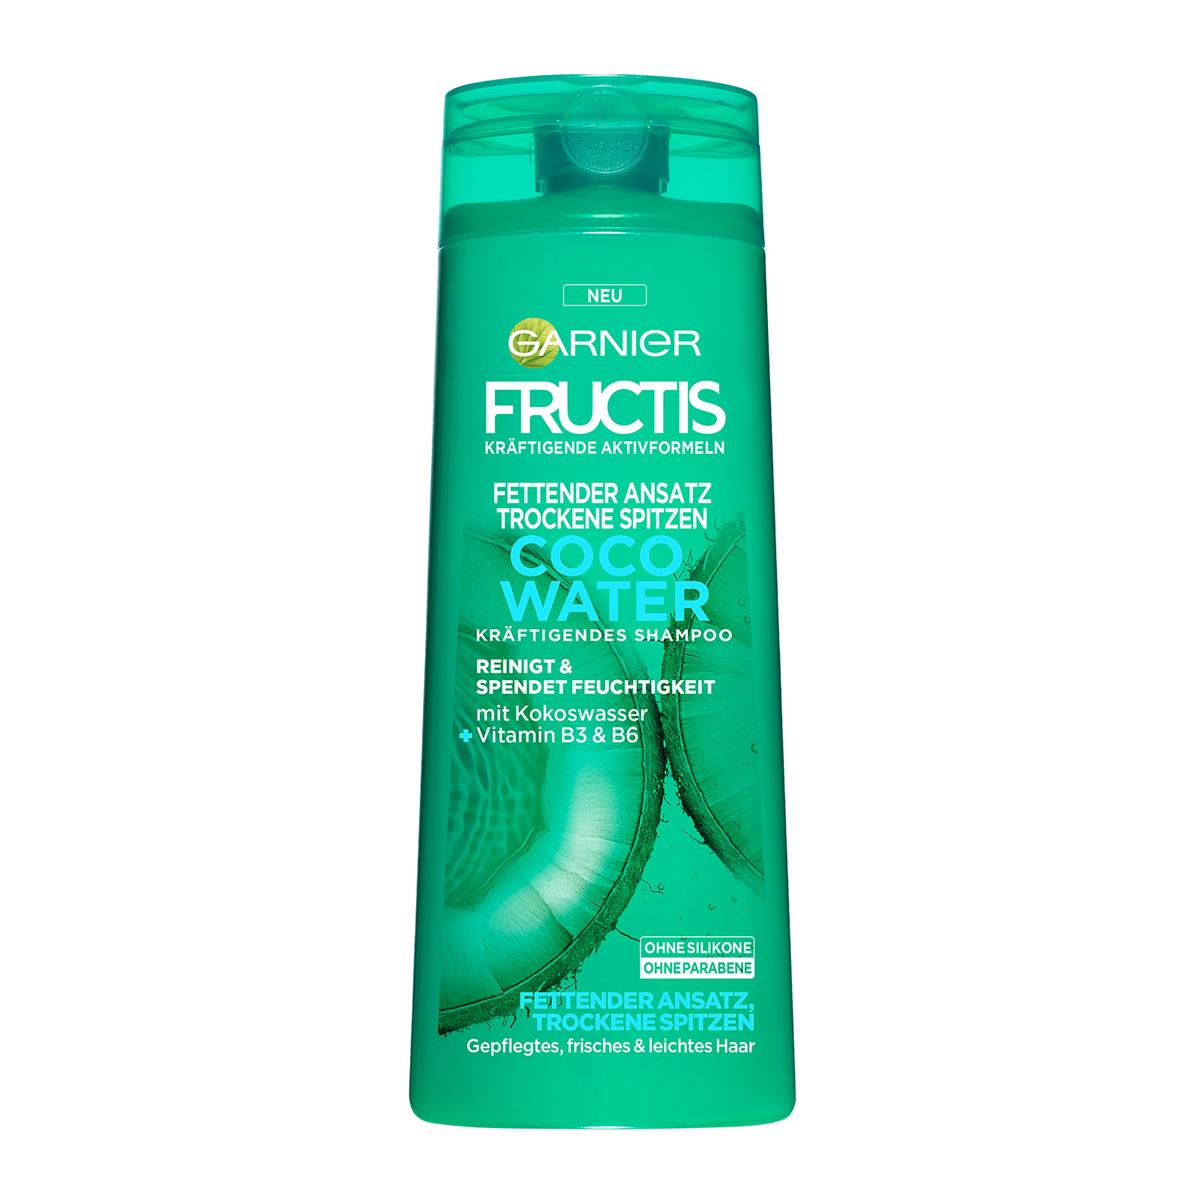 Garnier Fructis Shampoo Fettender Ansatz Trockene Spitzen Online